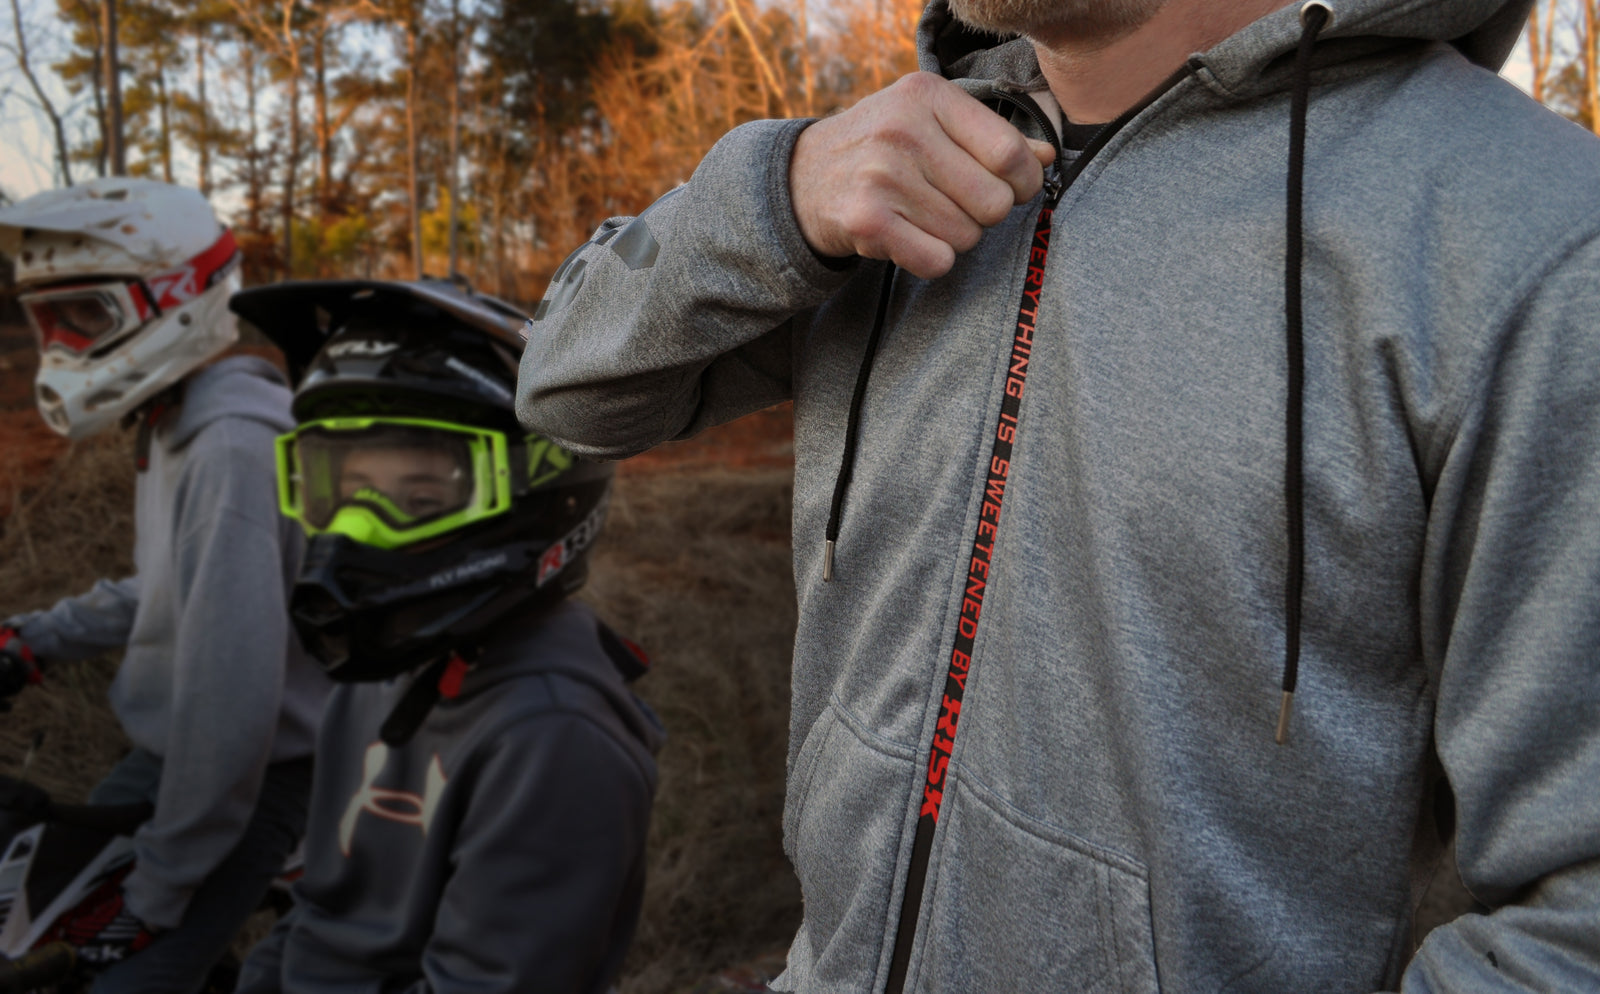 close up of a male wearing a Risk Racing zipper jacket pulling the zipper up revealing the hidden zipper message